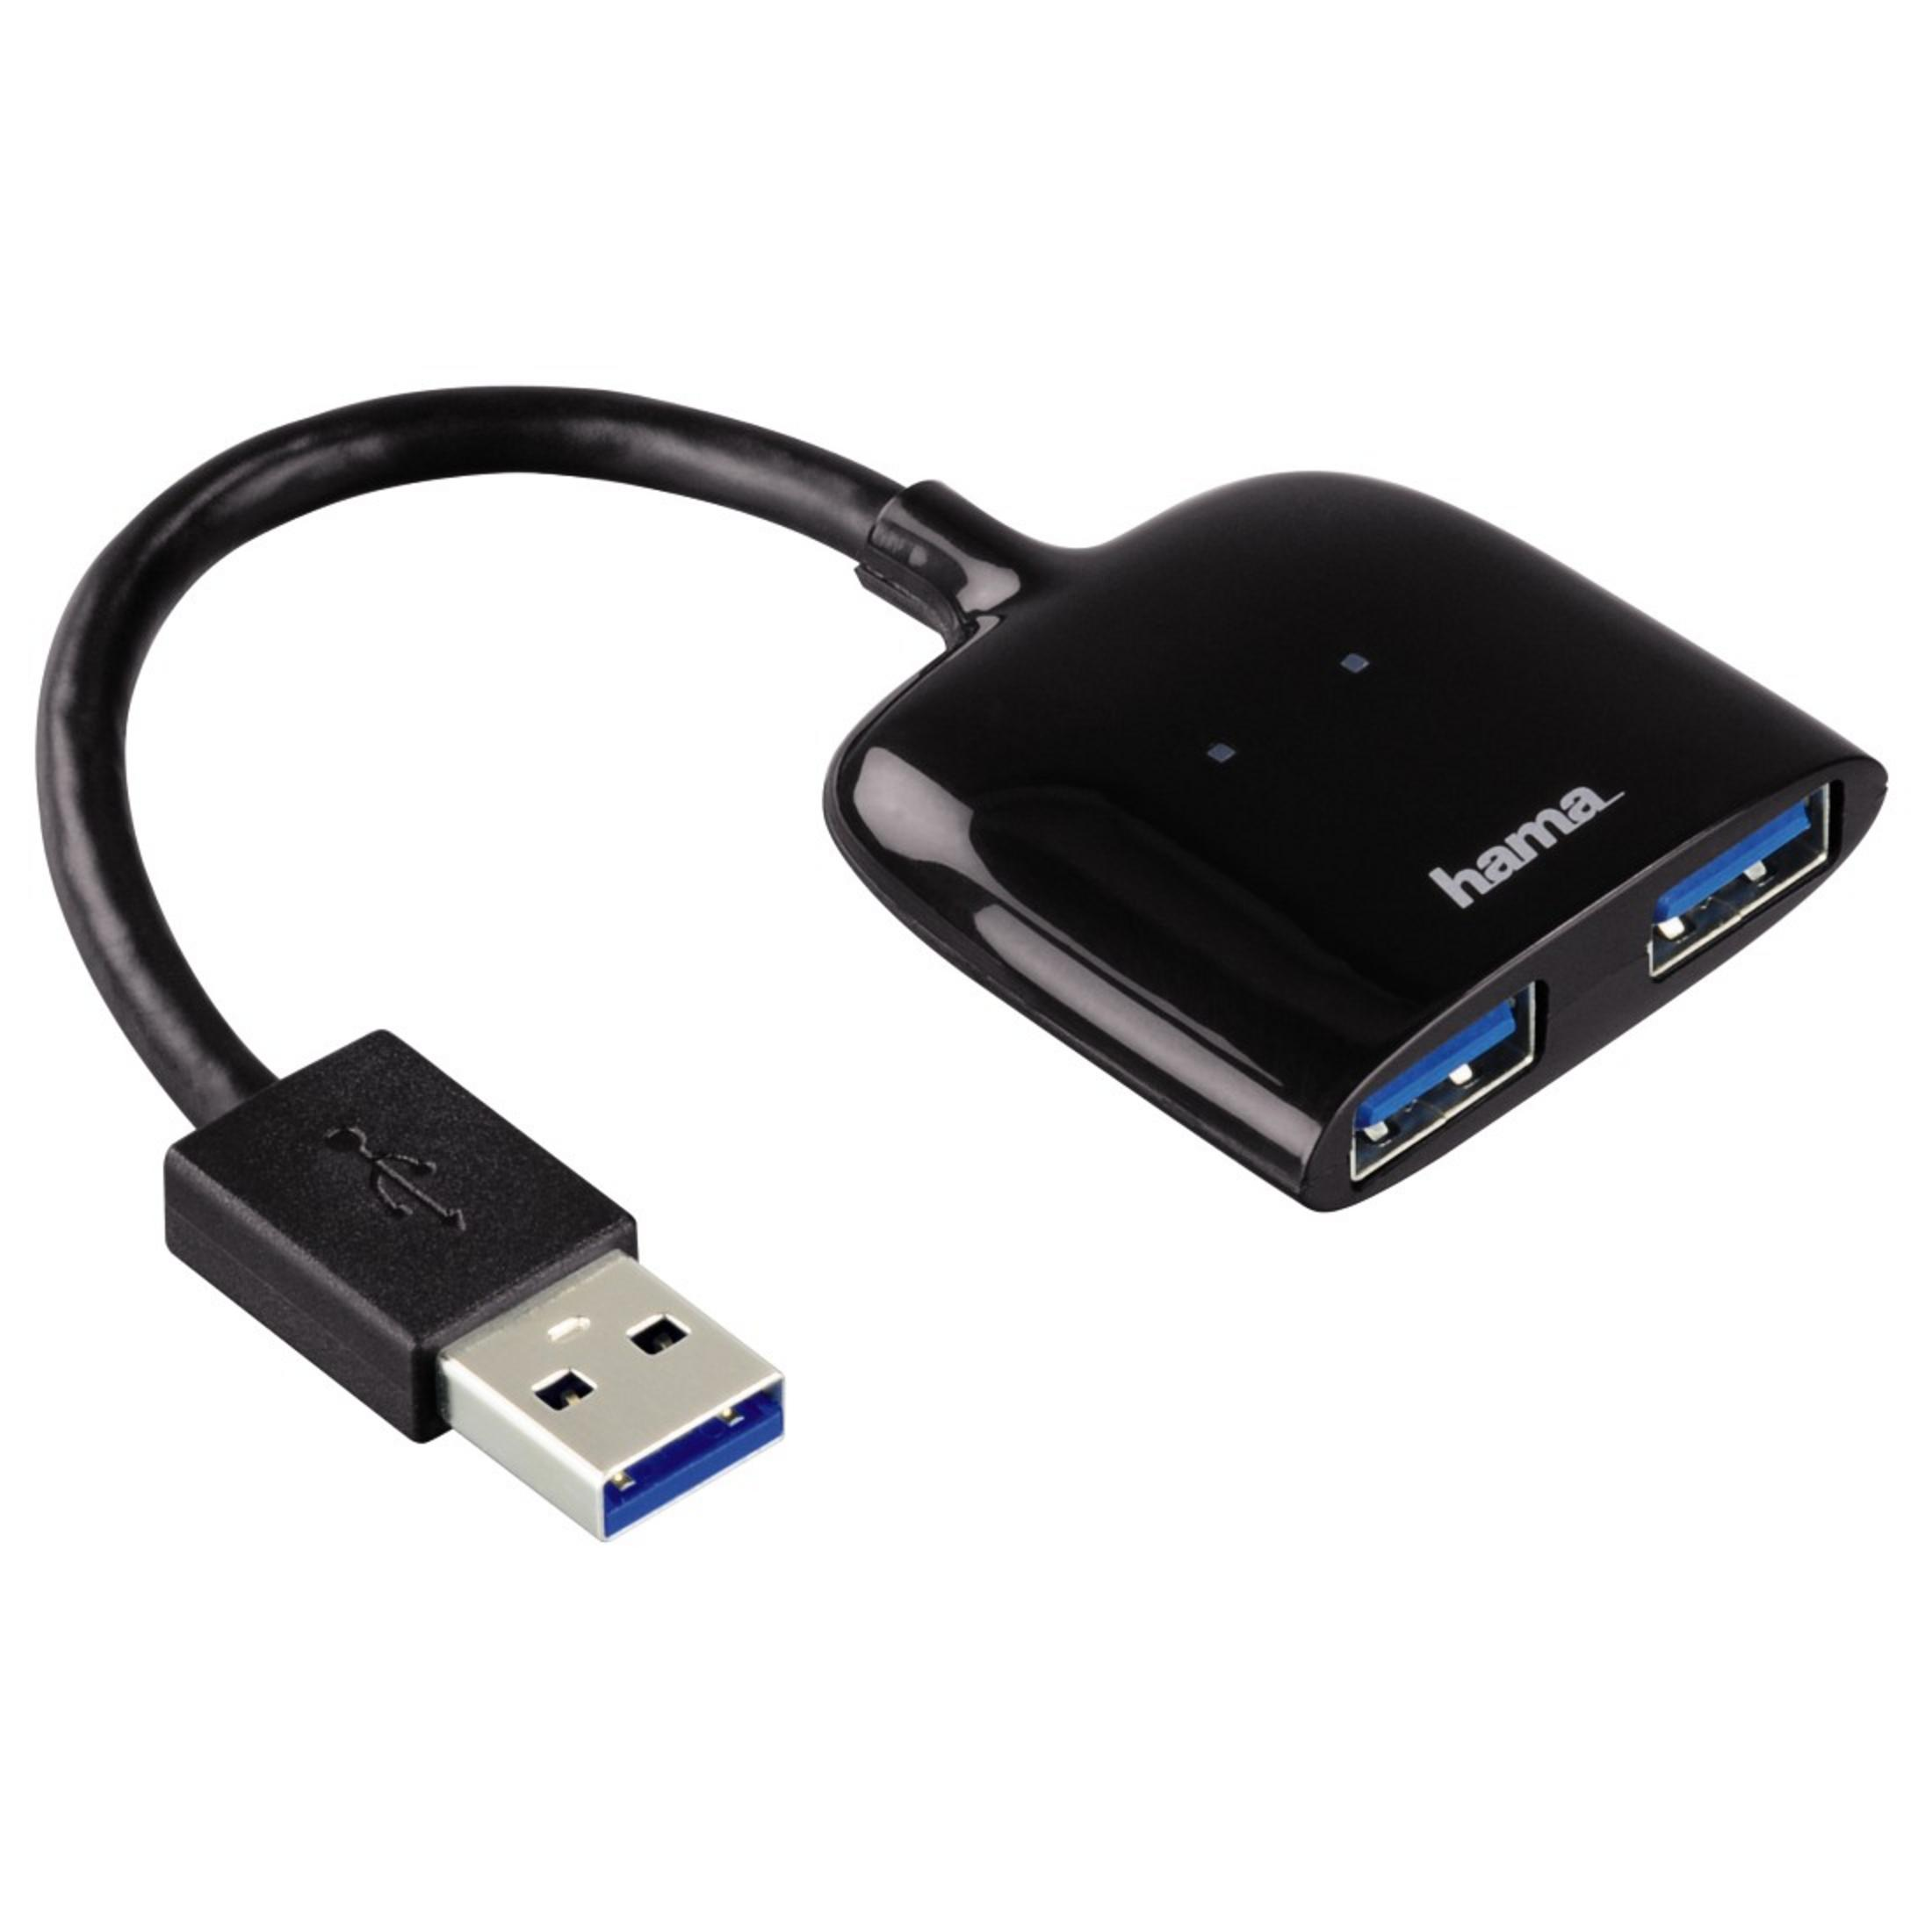 FACH, Schwarz USB USB HAMA HUB 3.0 Hub, 3.0 054132 2